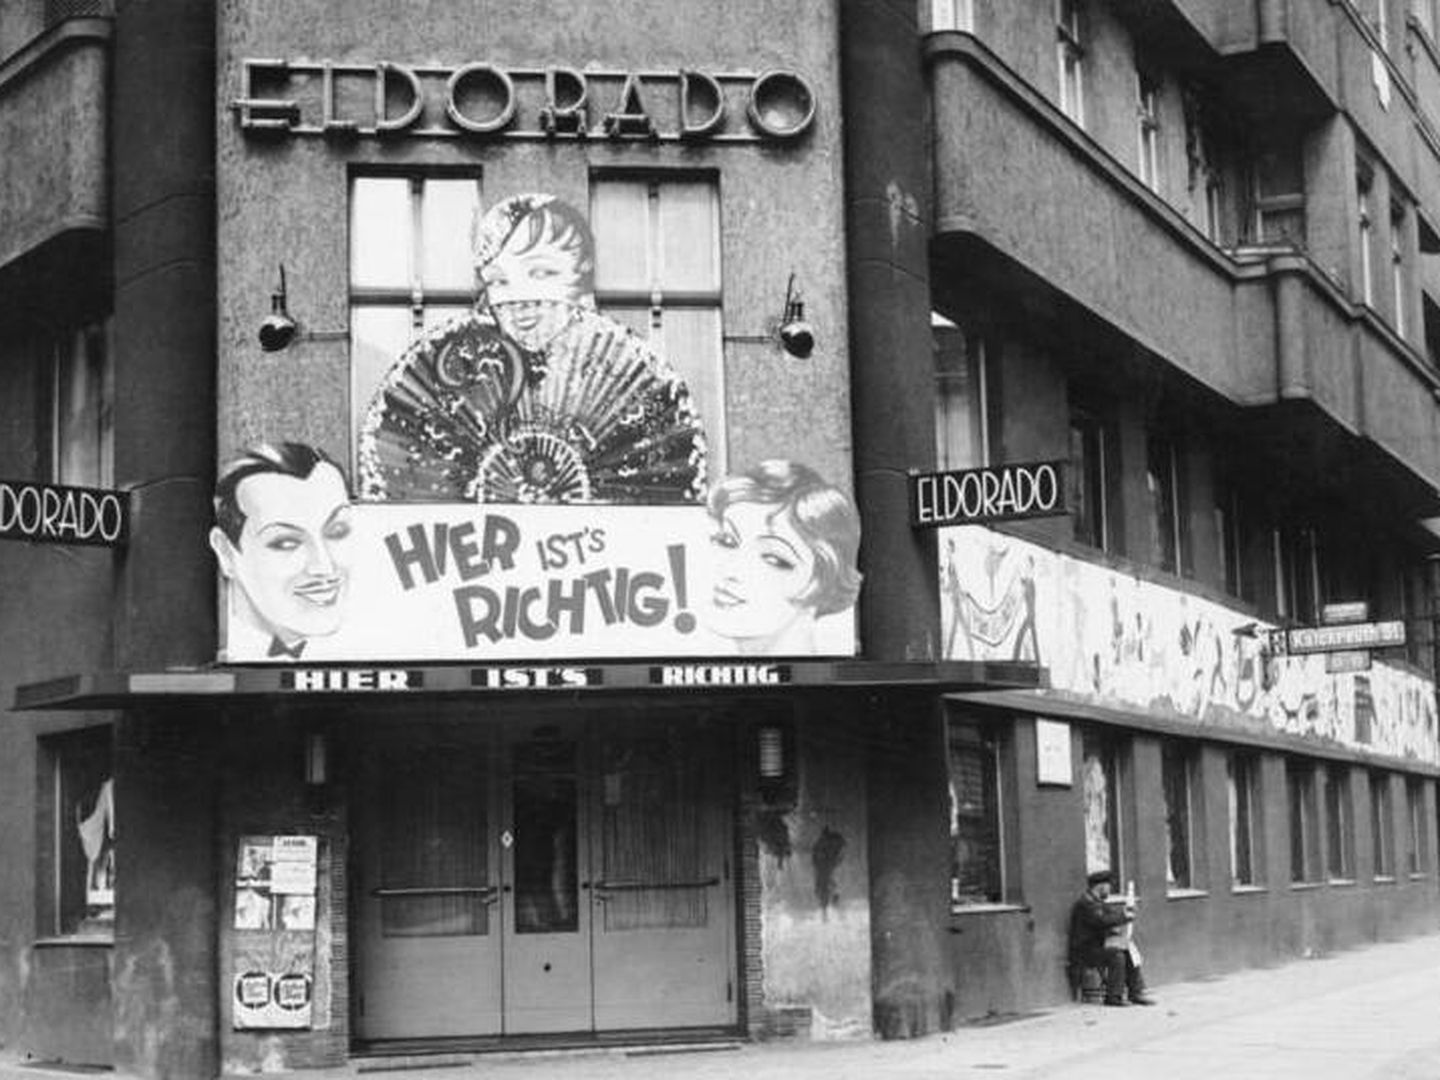 Fachada del club Eldorado original, durante la República de Weimar y antes de la llegada de los nazis al poder. (Wikipedia)